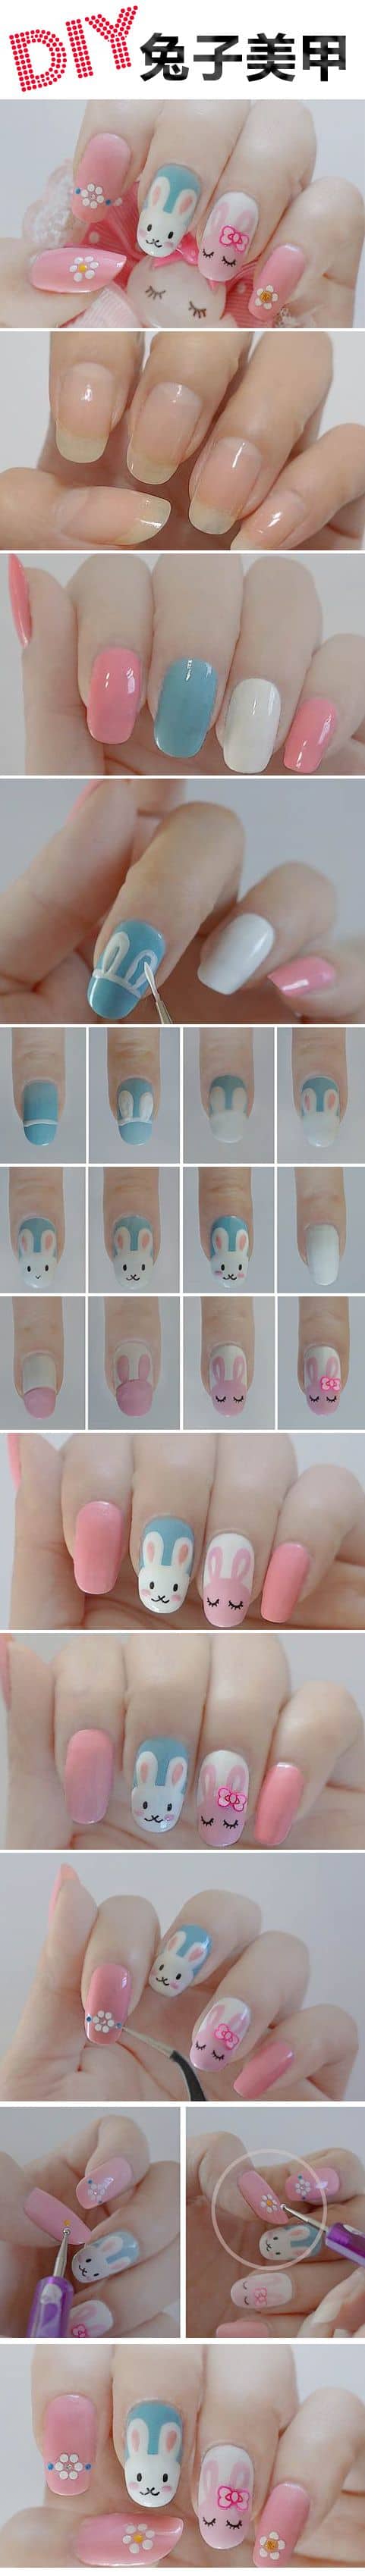 Spring bunny nail art